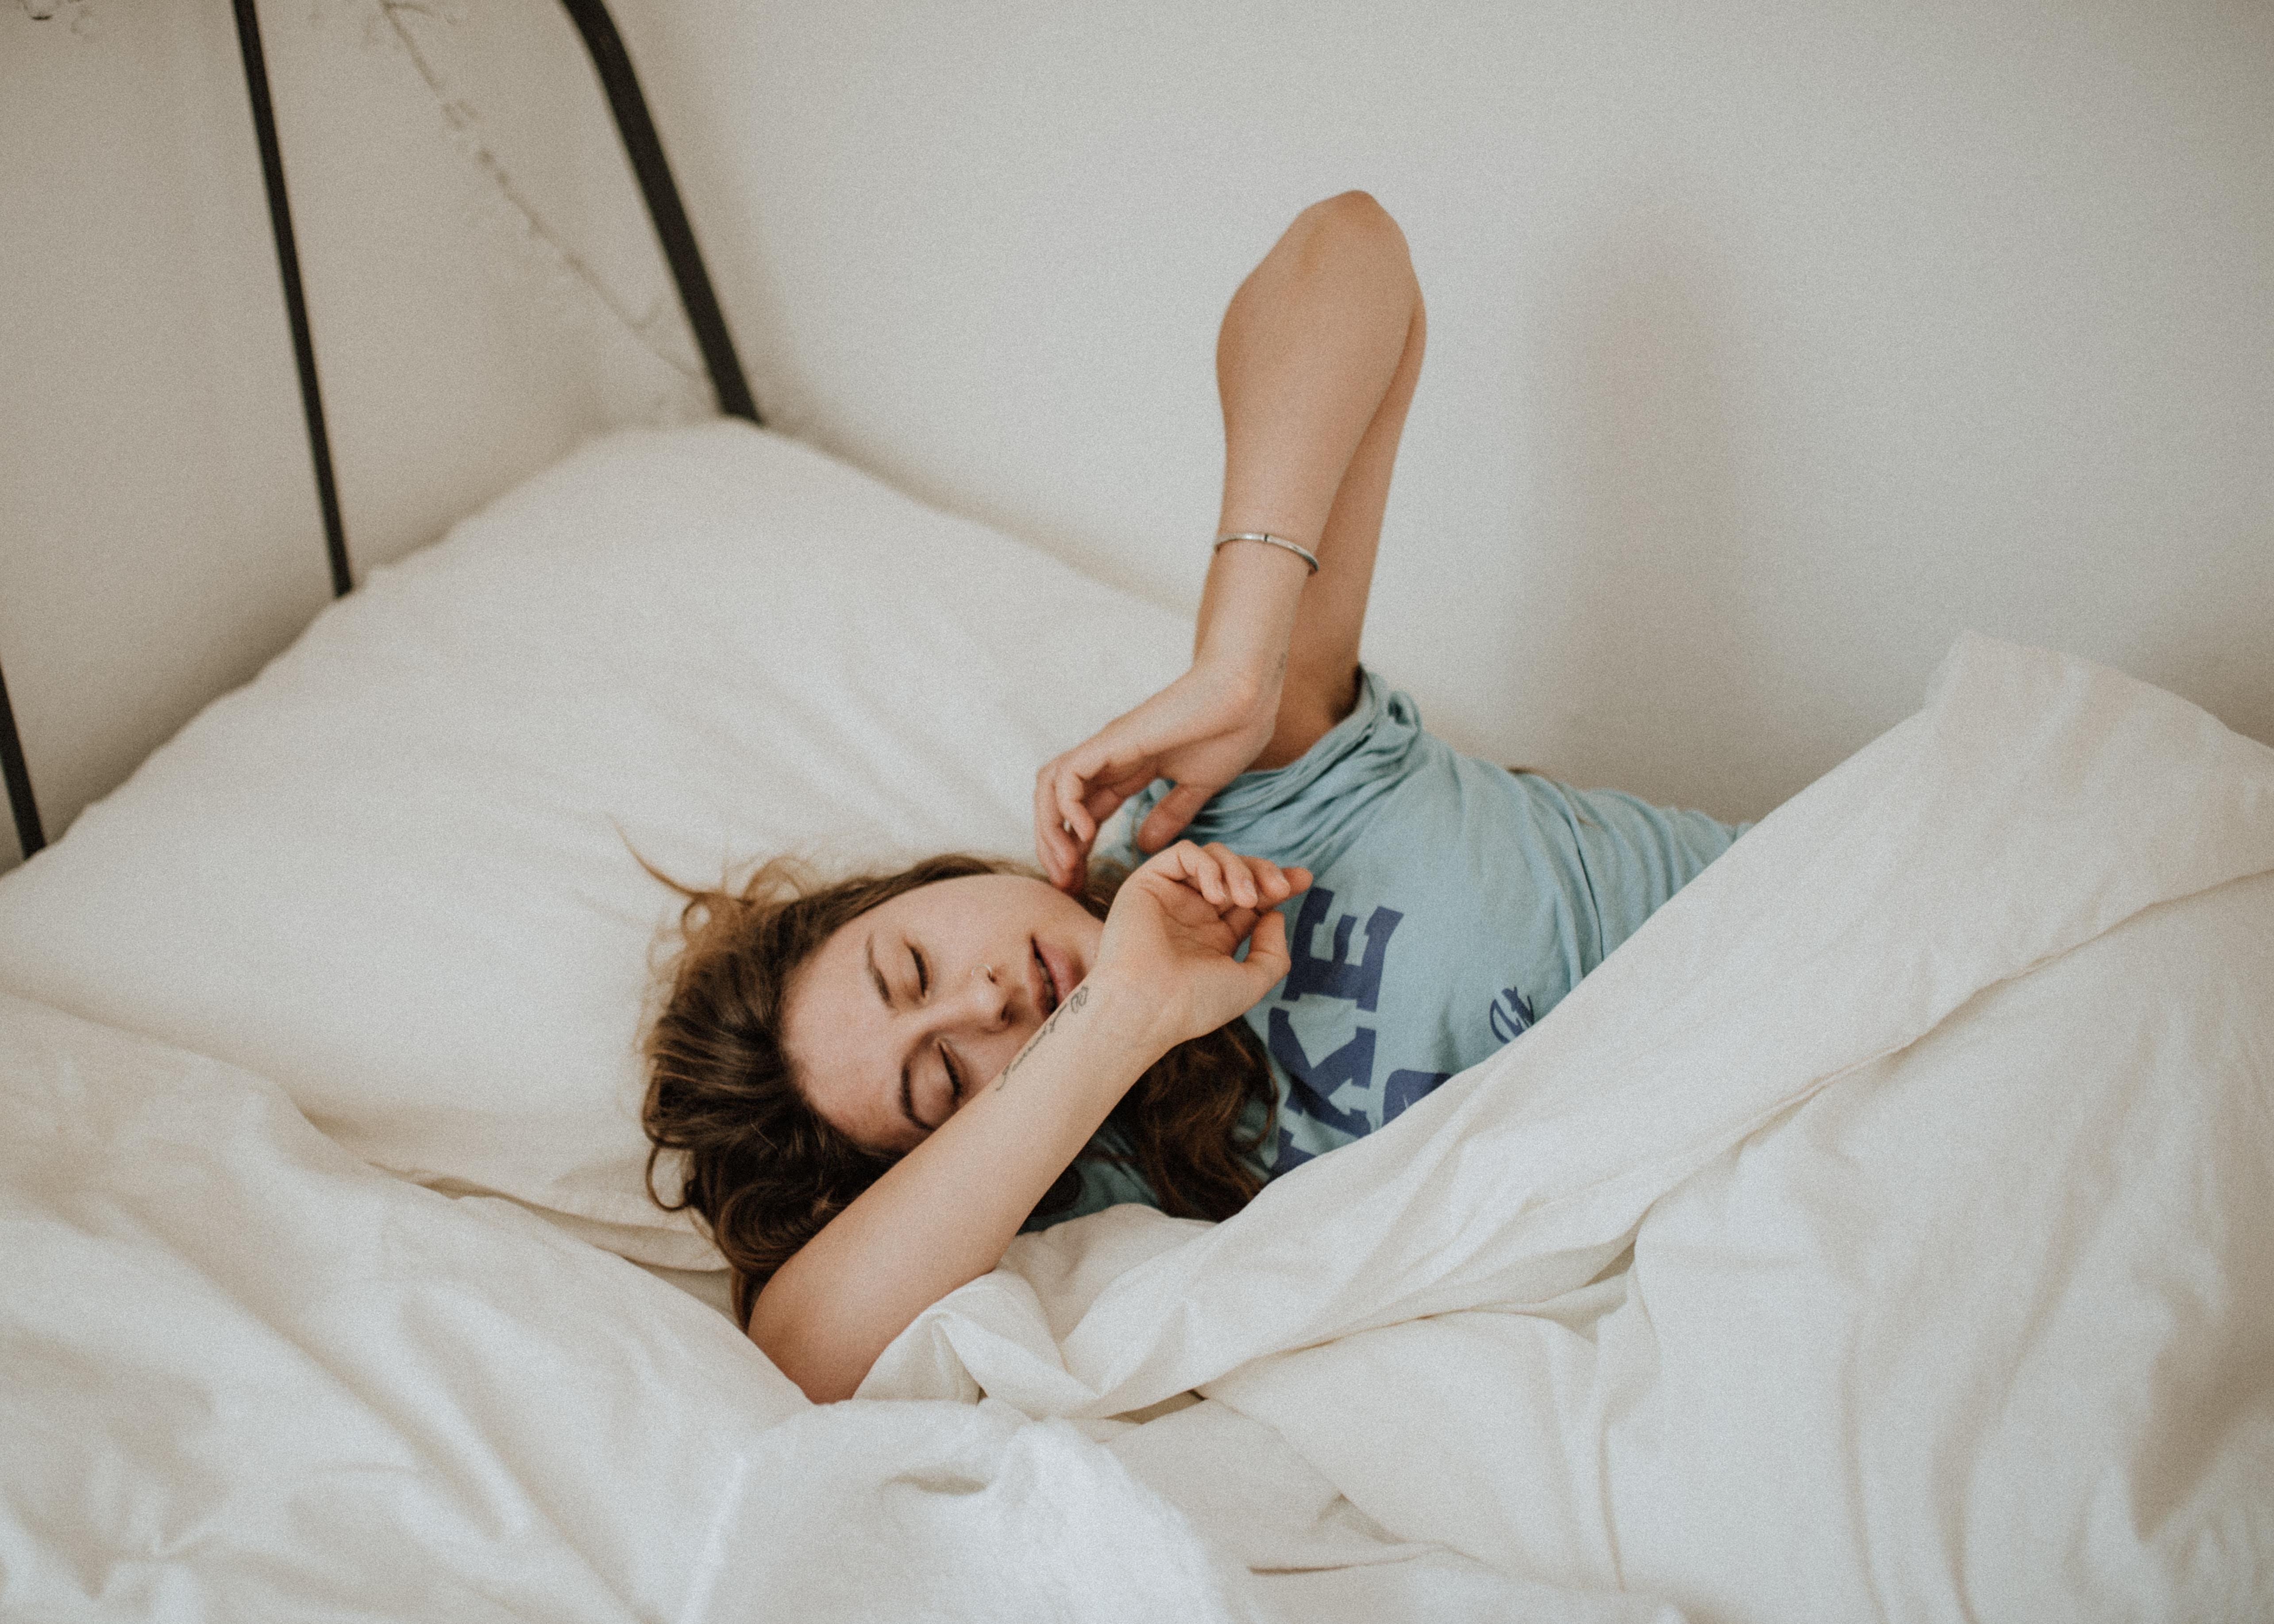 Как легко проснуться и быть бодрым за 5 минут